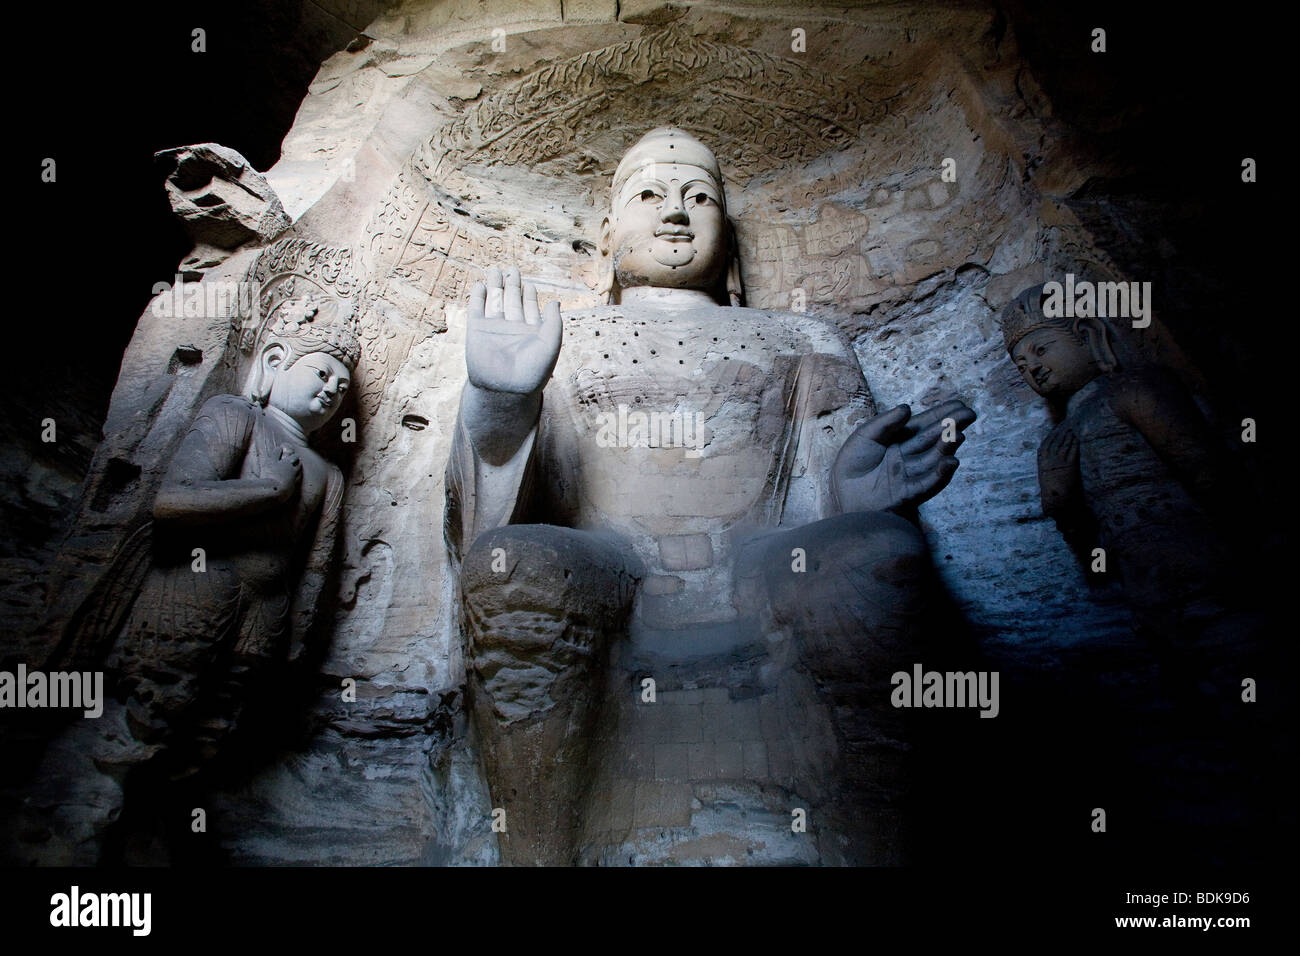 Yungang Shiku buddhistischen Höhlen Komplex, 16km westlich von Datong, erstrecken Statuen, geschnitzt im 5. Jahrhundert n. Chr. waren sich über mehr als 1 km. Stockfoto